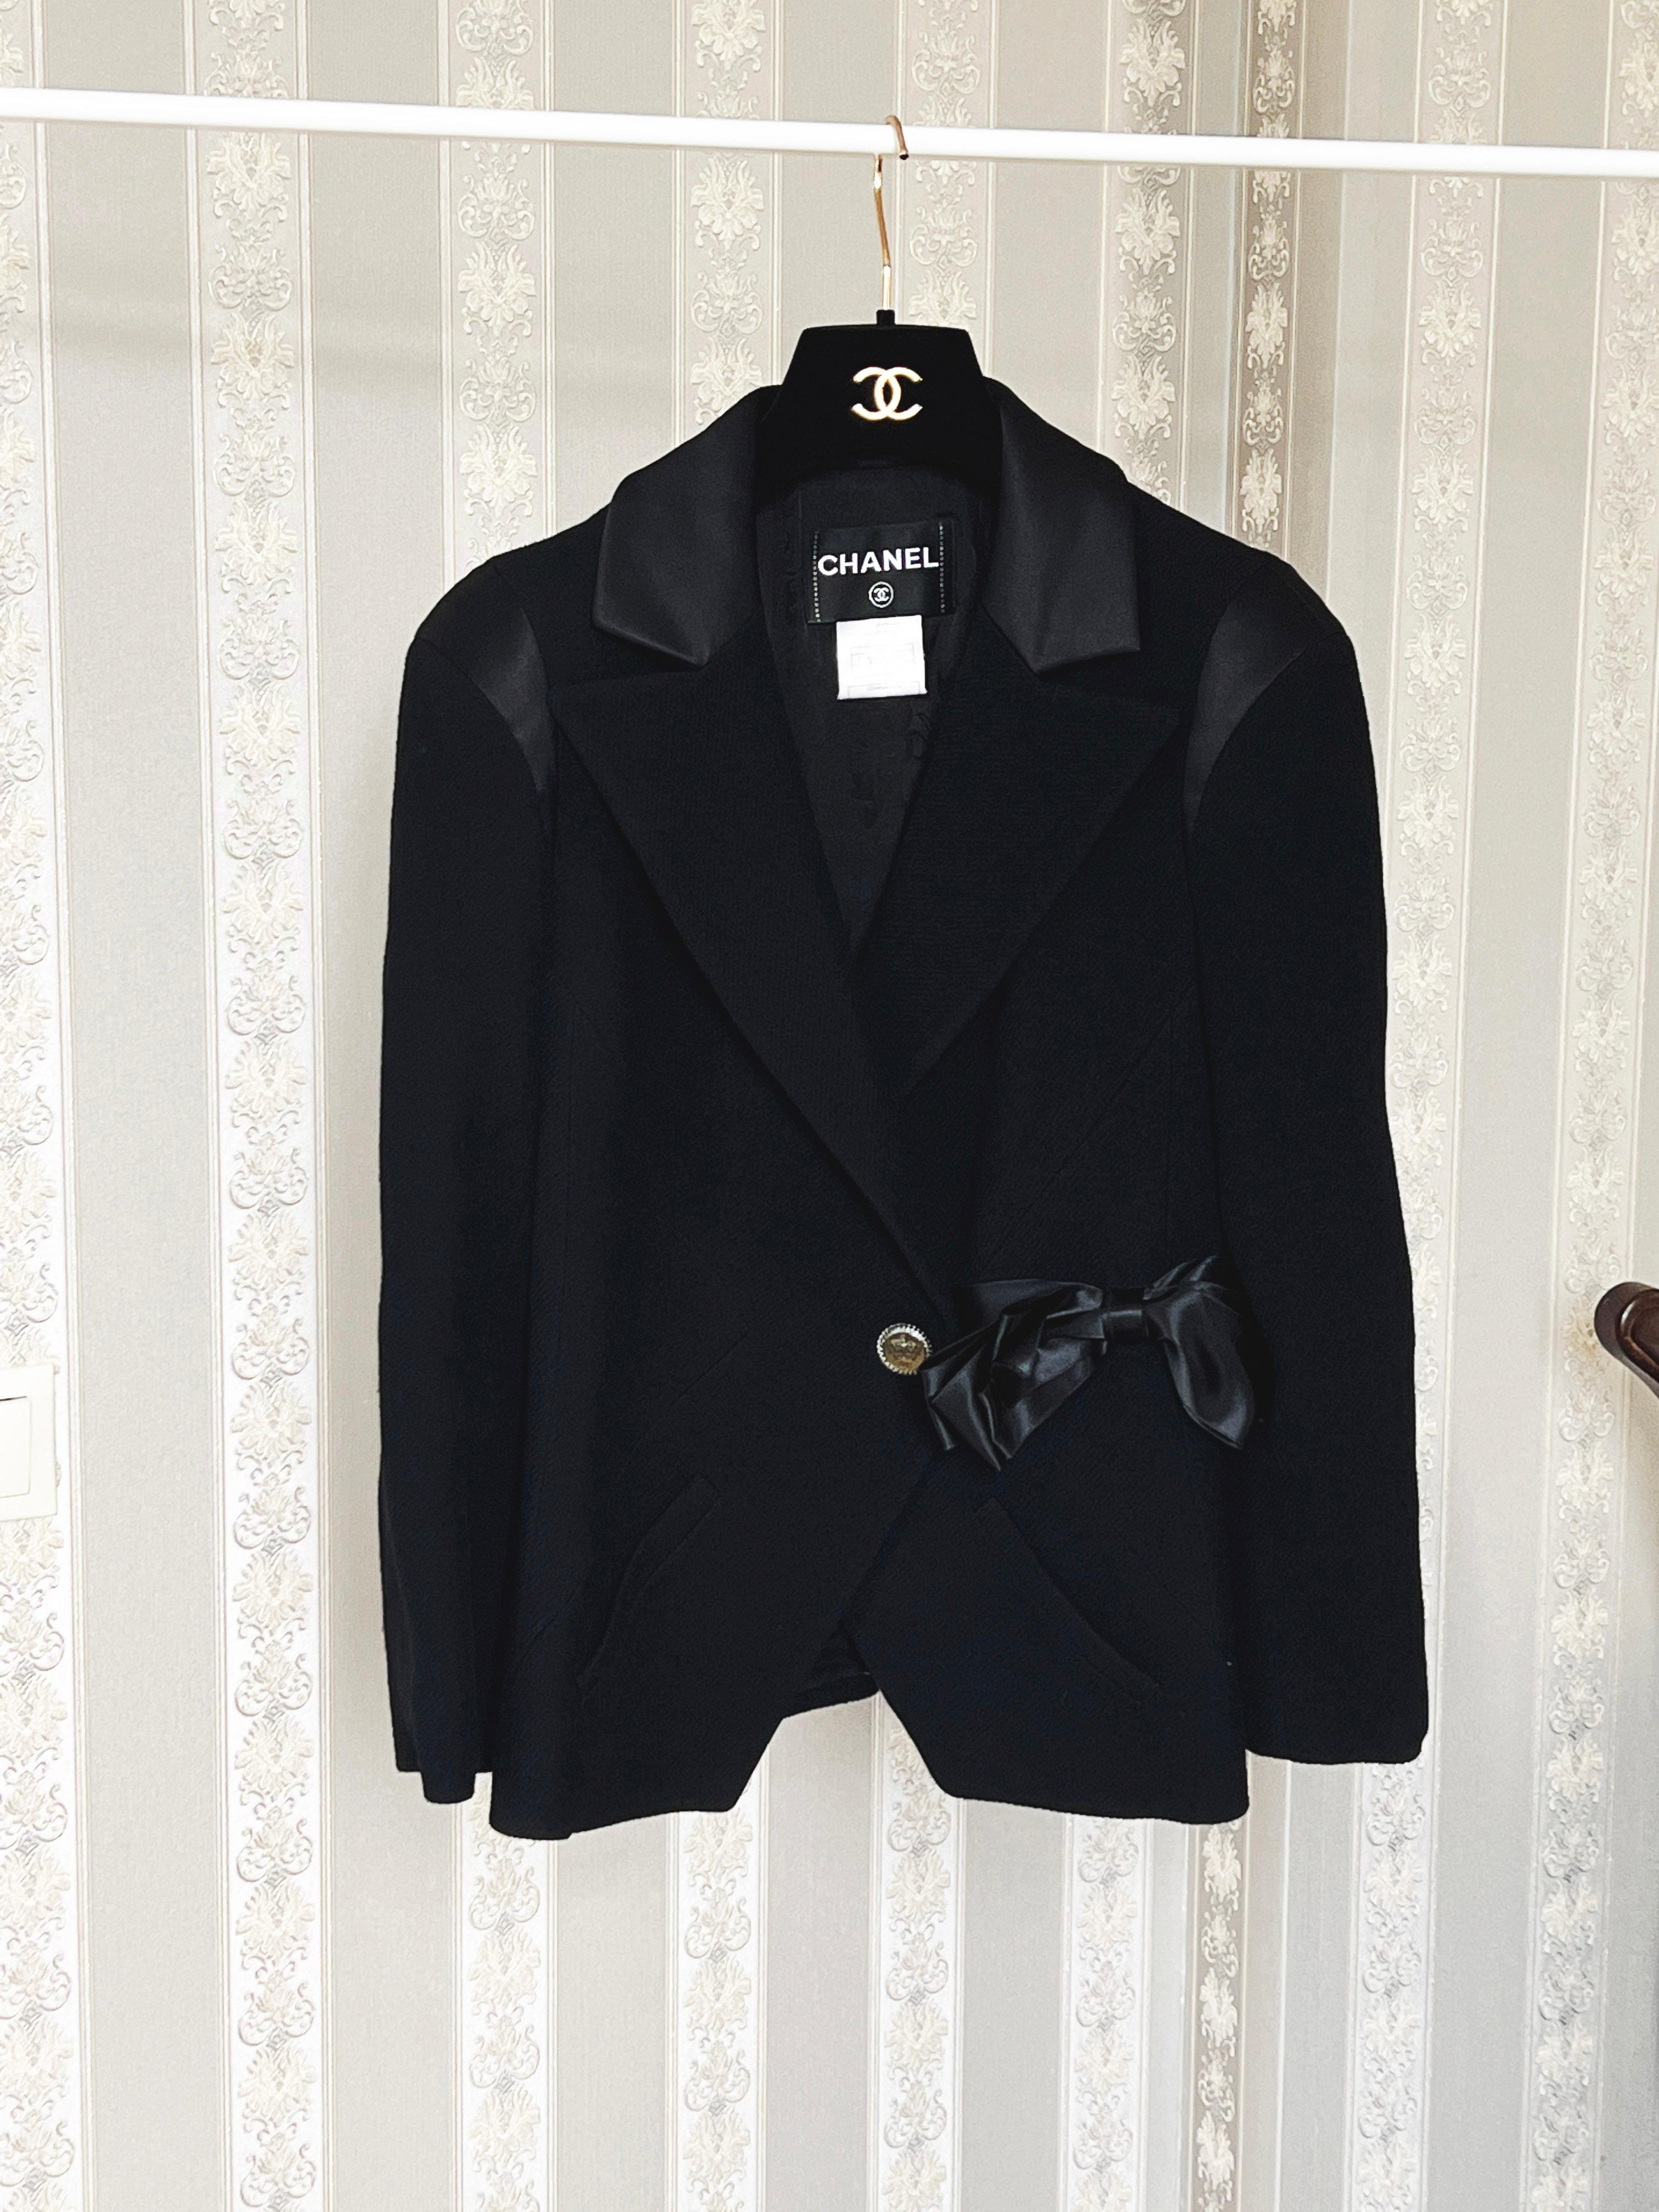 Chanel New Paris / London Runway Black Tweed Jacket For Sale 3